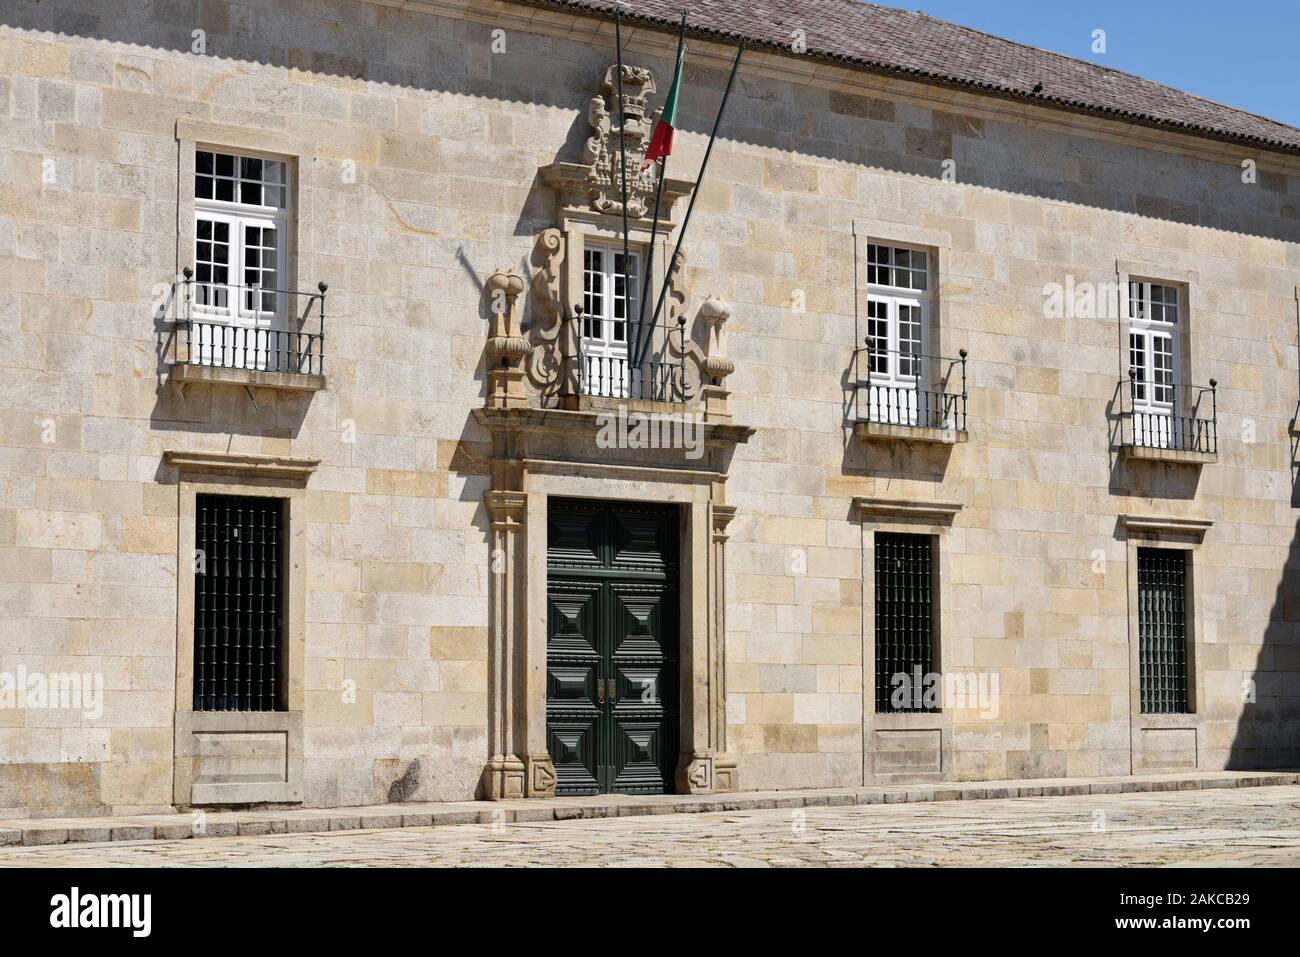 Portugal, Minho Region, Braga, Largo do Paço - Paço Palace, Former headquarters of the Bracarense Republic Stock Photo